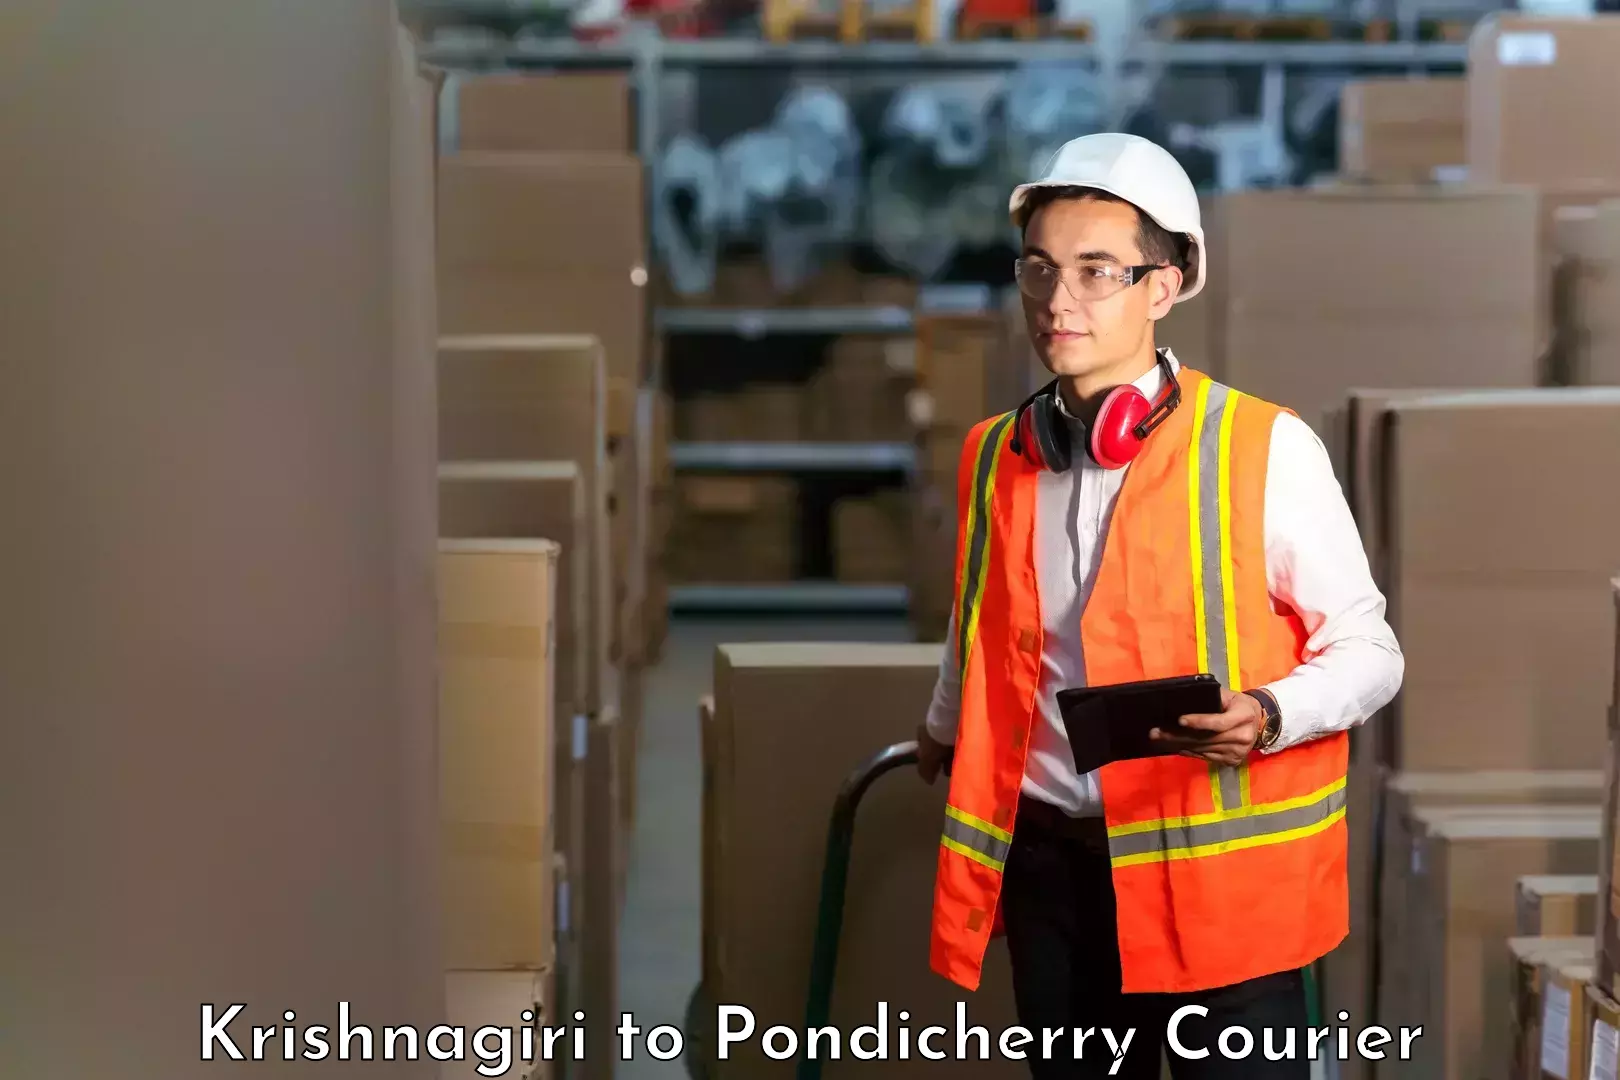 Small business couriers Krishnagiri to Pondicherry